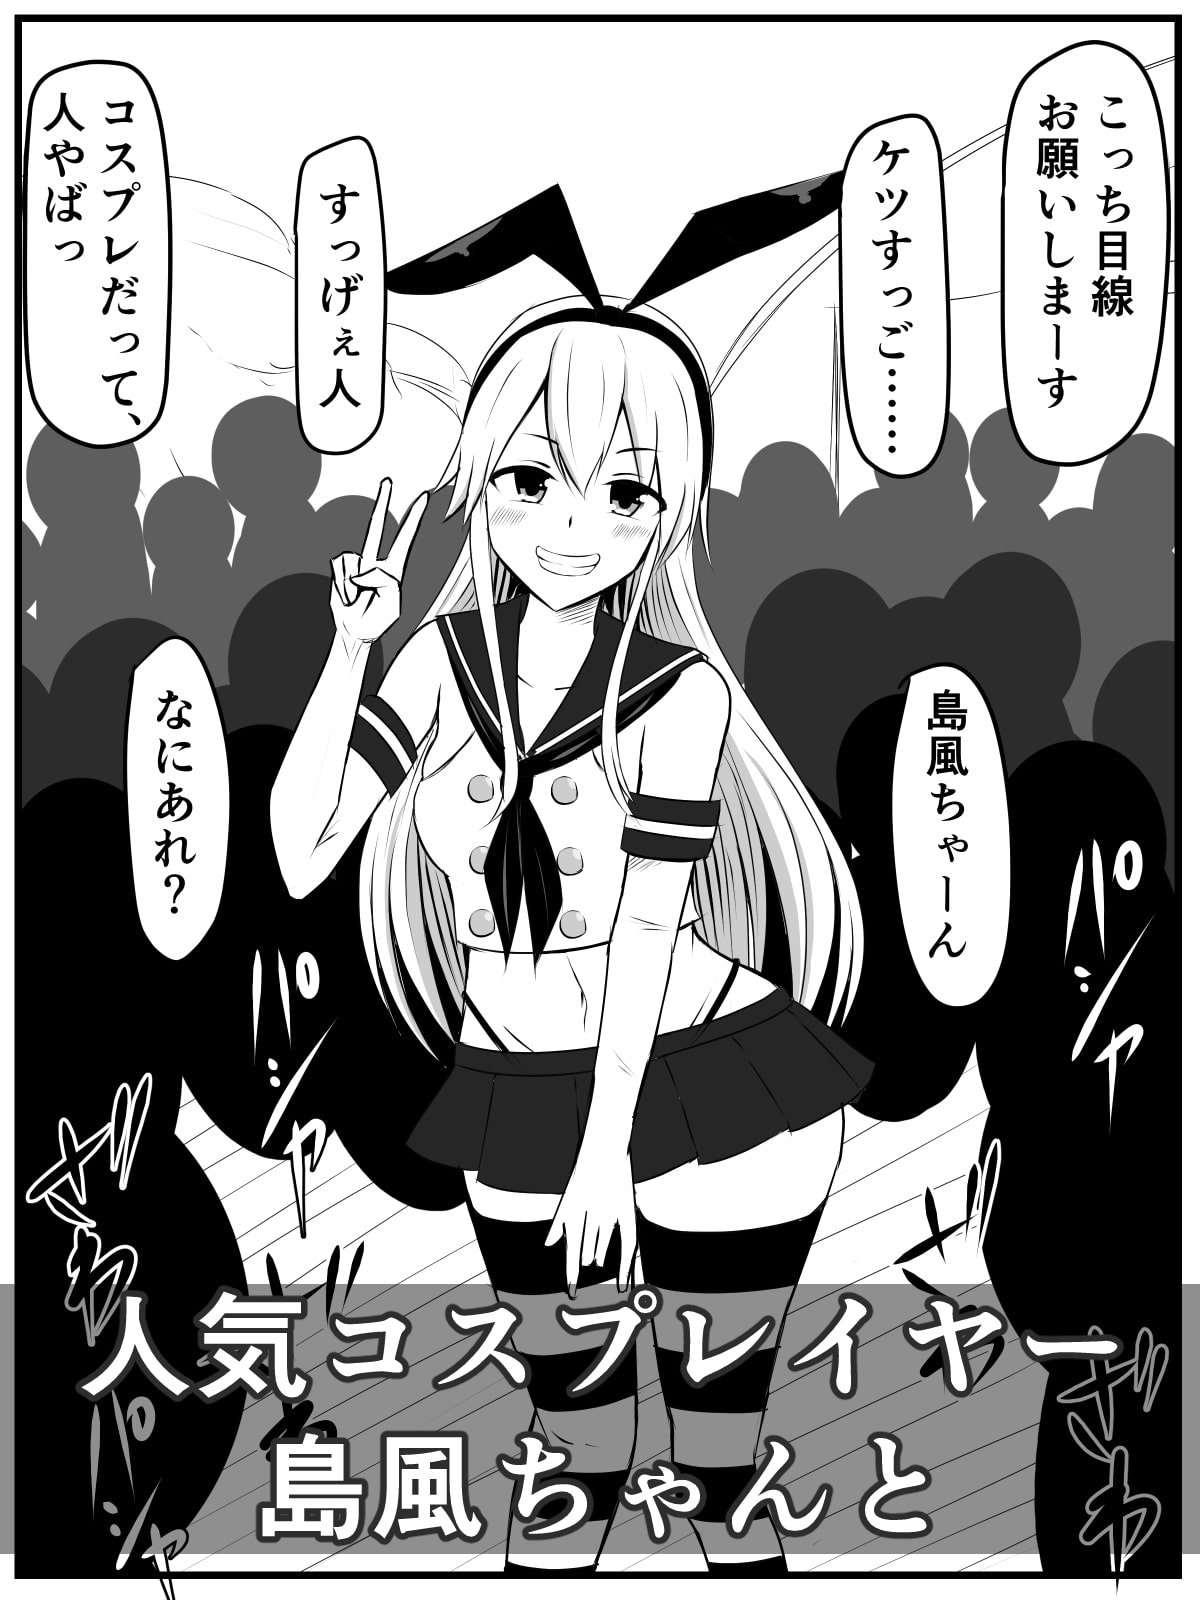 コスプレイヤー島風ちゃんが潜水艦級短小チ〇ポをひっぱたきながら搾る話のサンプル画像